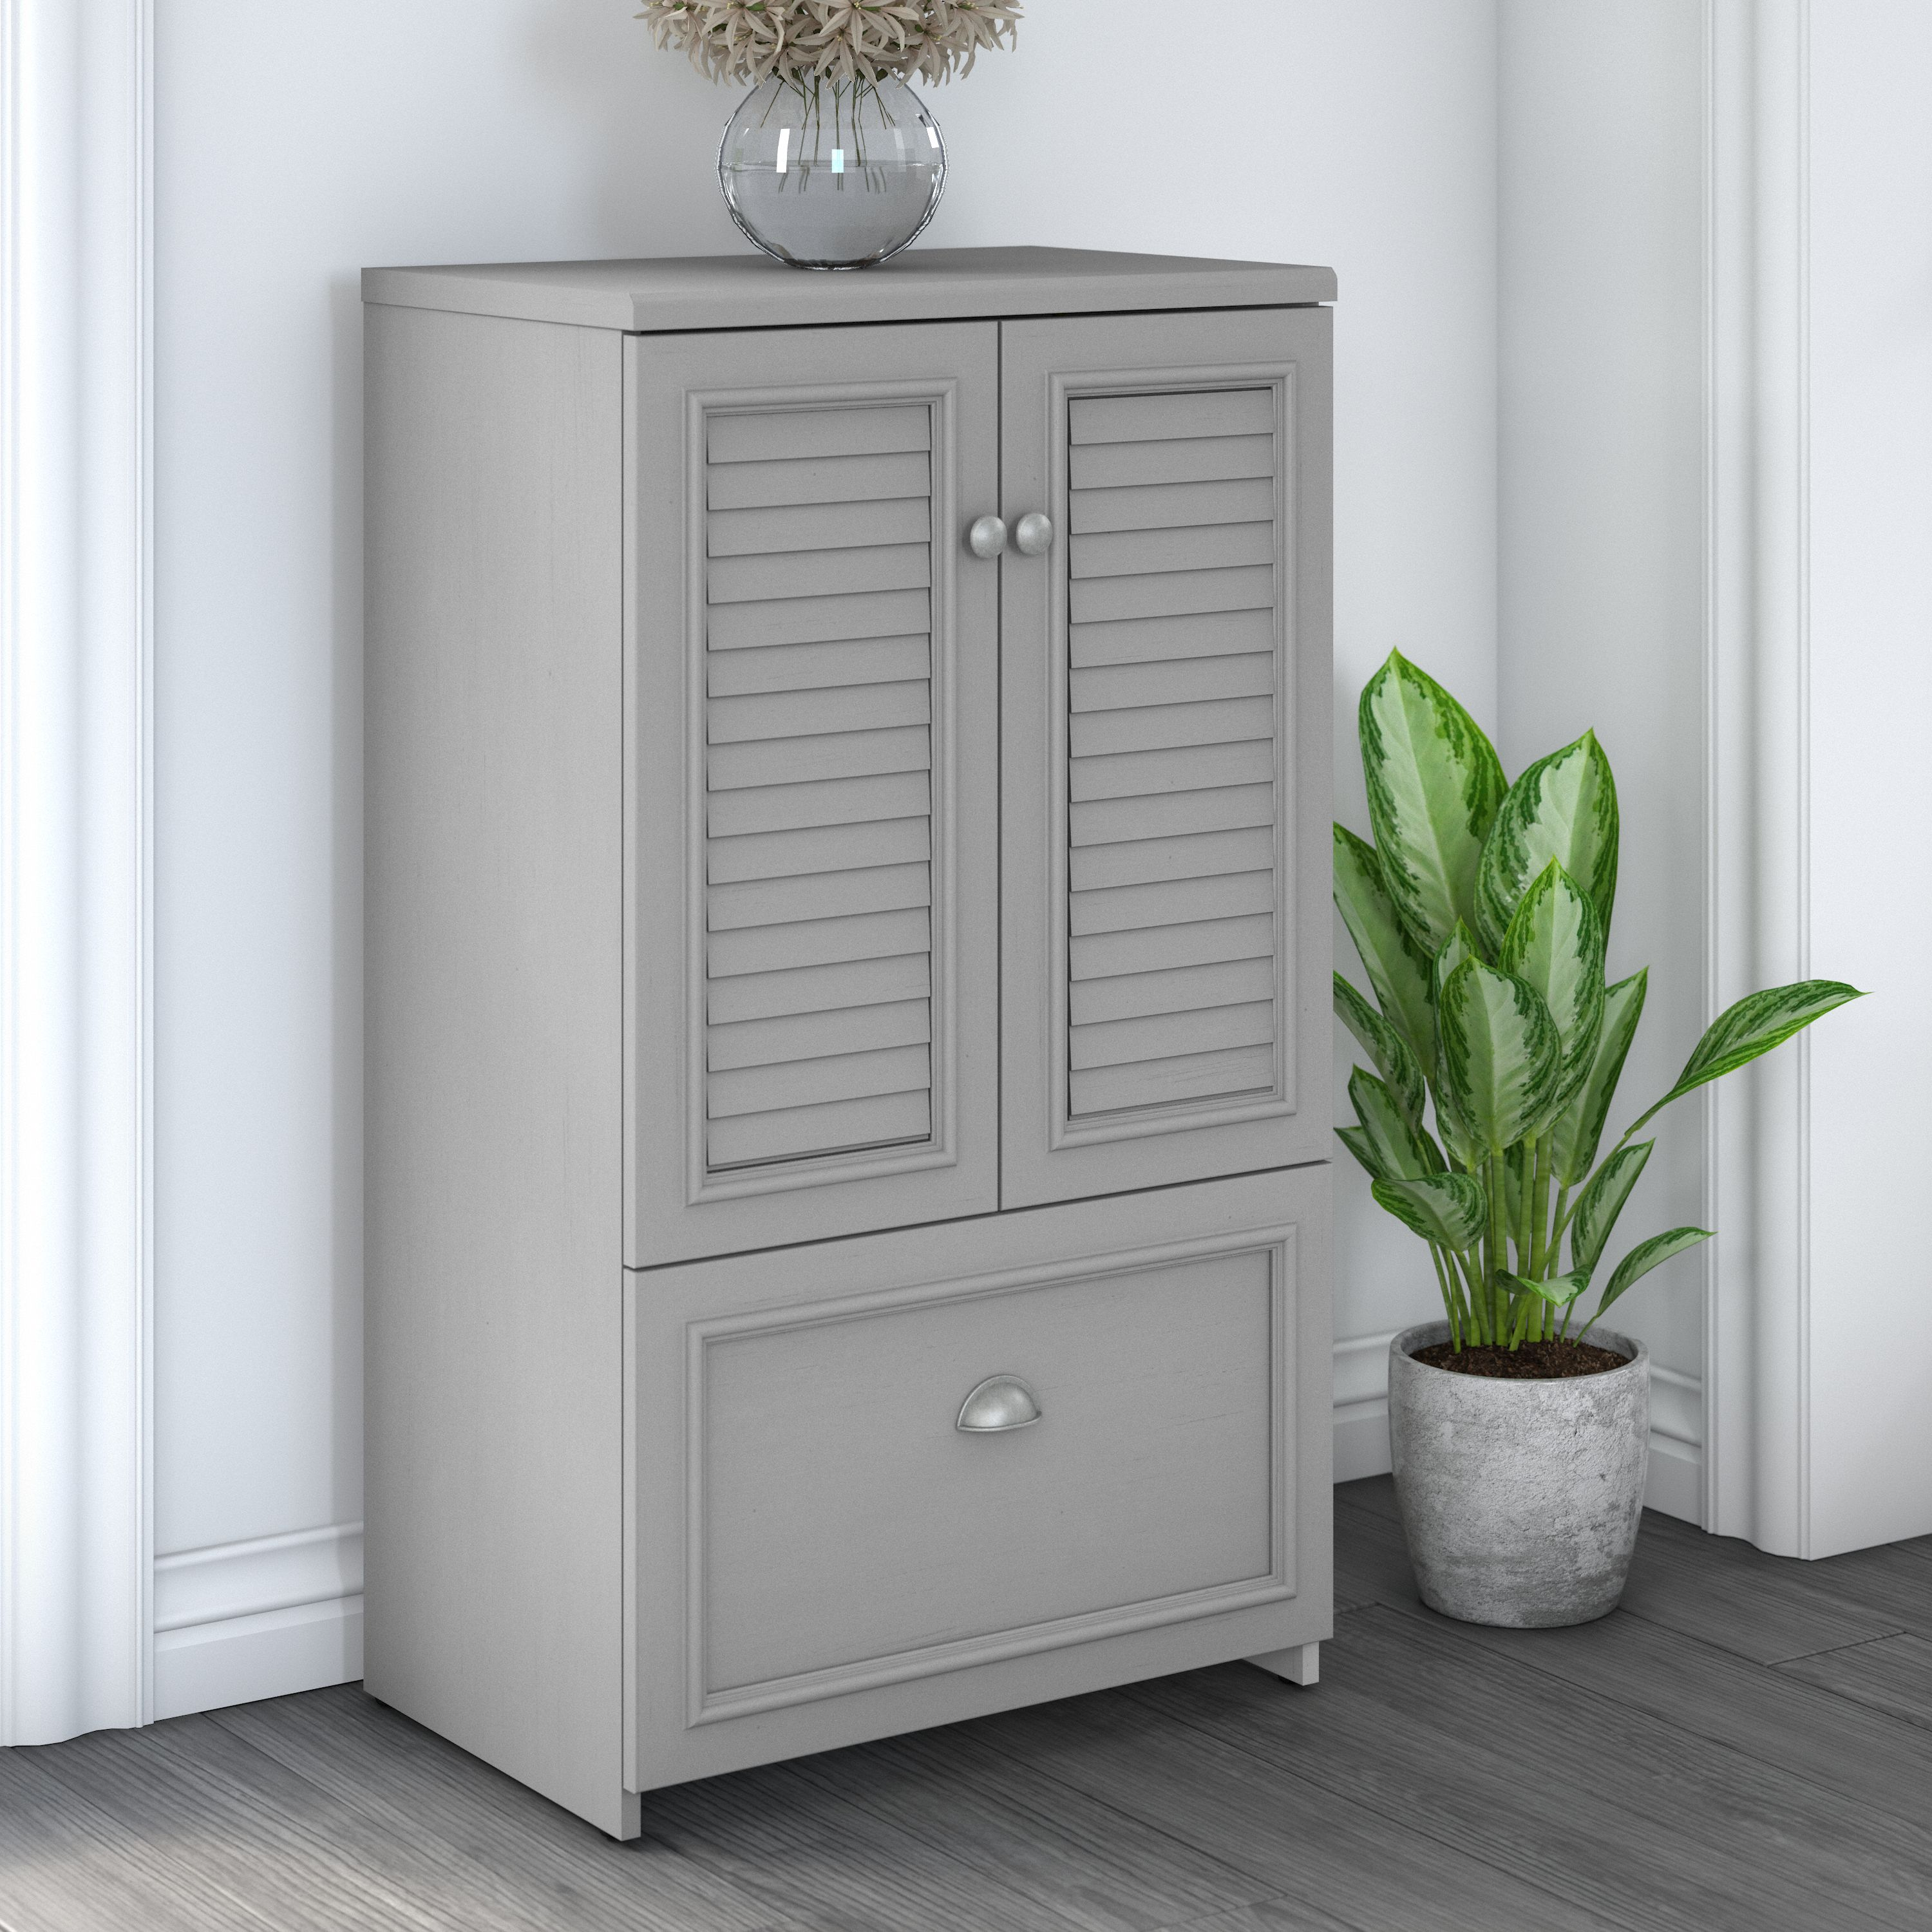 Shop Bush Furniture Fairview Shoe Storage Cabinet with Doors 01 FV020CG #color_cape cod gray